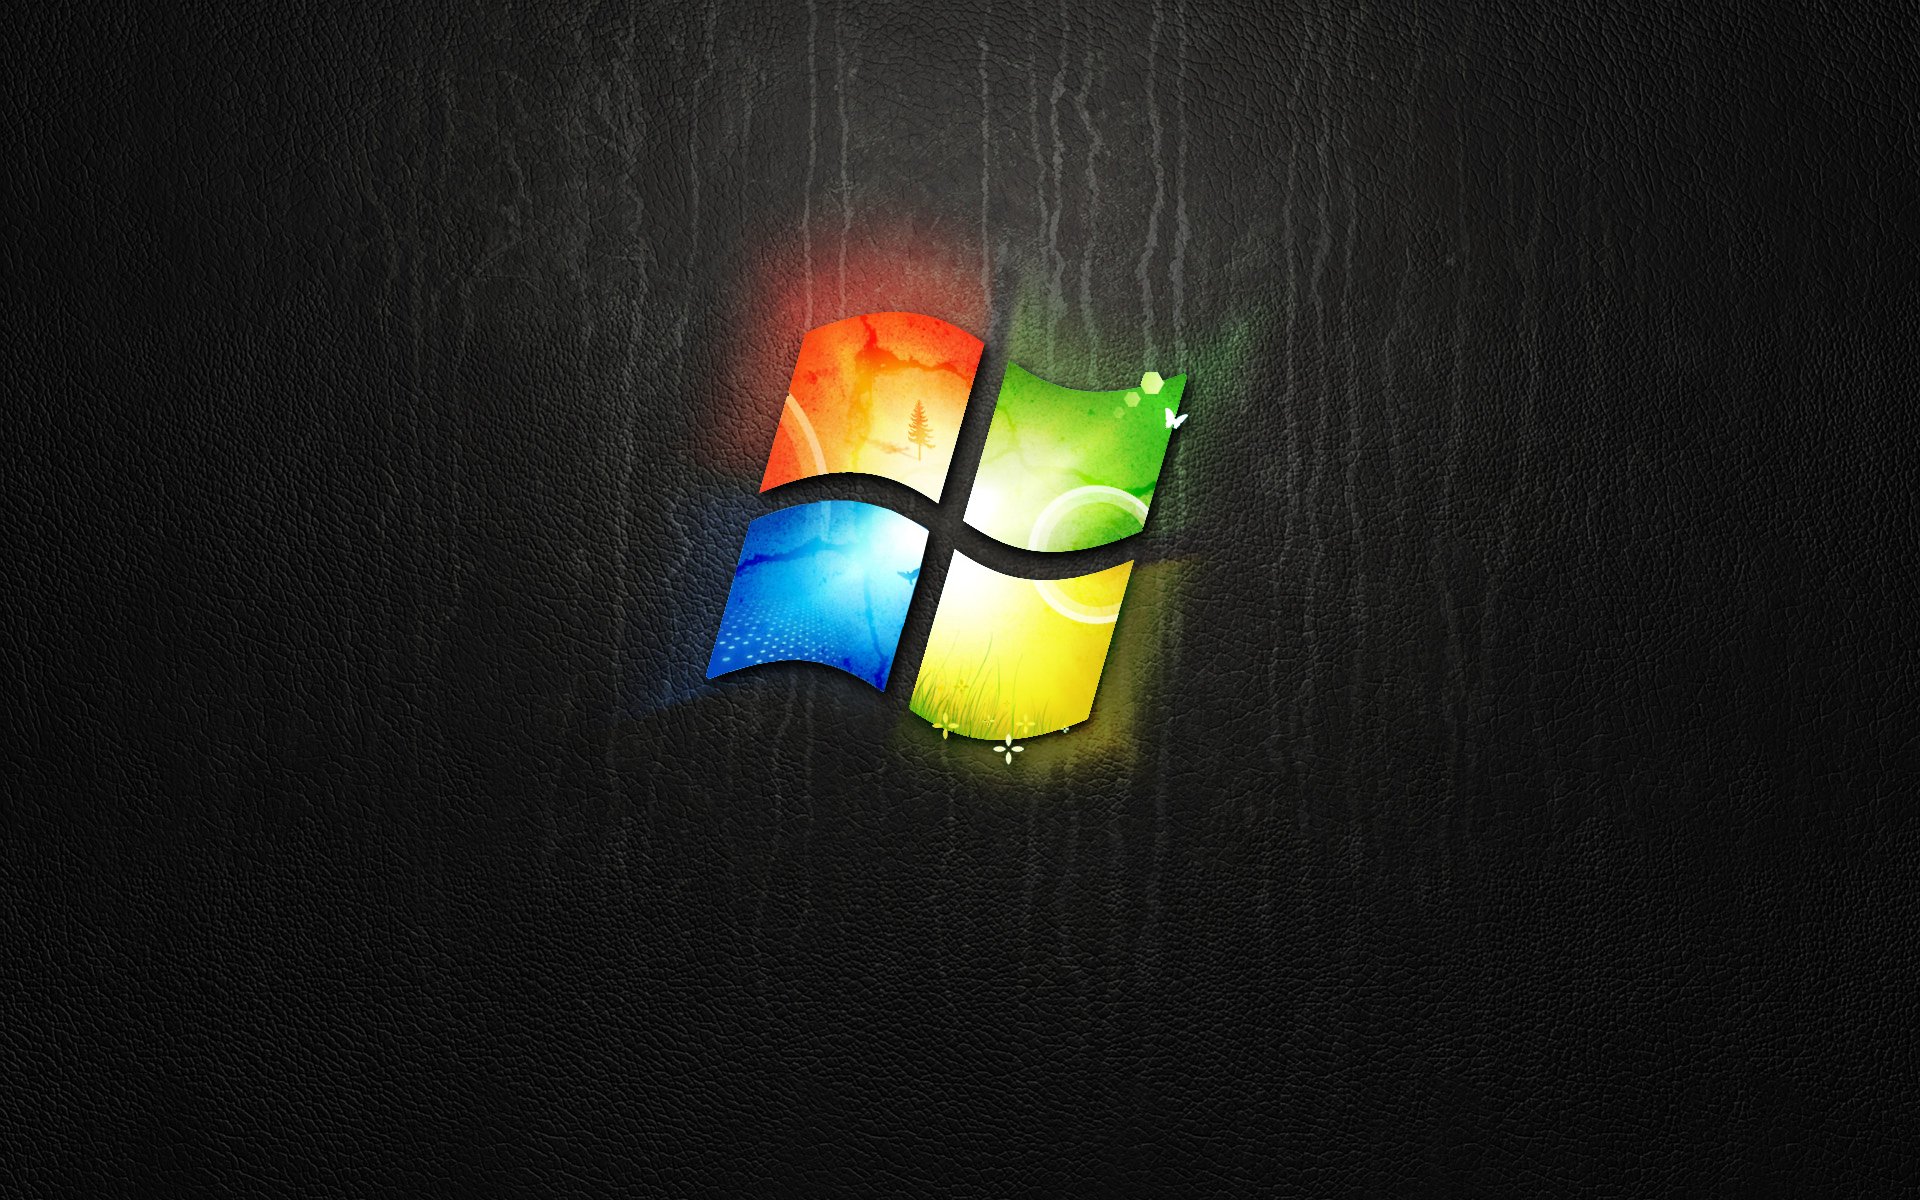 Không ưa thích giao diện của Windows 8? Vậy tại sao lại không tải ngay hình nền Windows 8 miễn phí của chúng tôi để tùy chỉnh nó sao cho phù hợp với tâm trạng và thẩm mỹ của bạn? Bộ sưu tập hình nền này đa dạng về màu sắc, độ phân giải, thể hiện sự đa dạng, tươi sáng, đầy cá tính của người dùng.